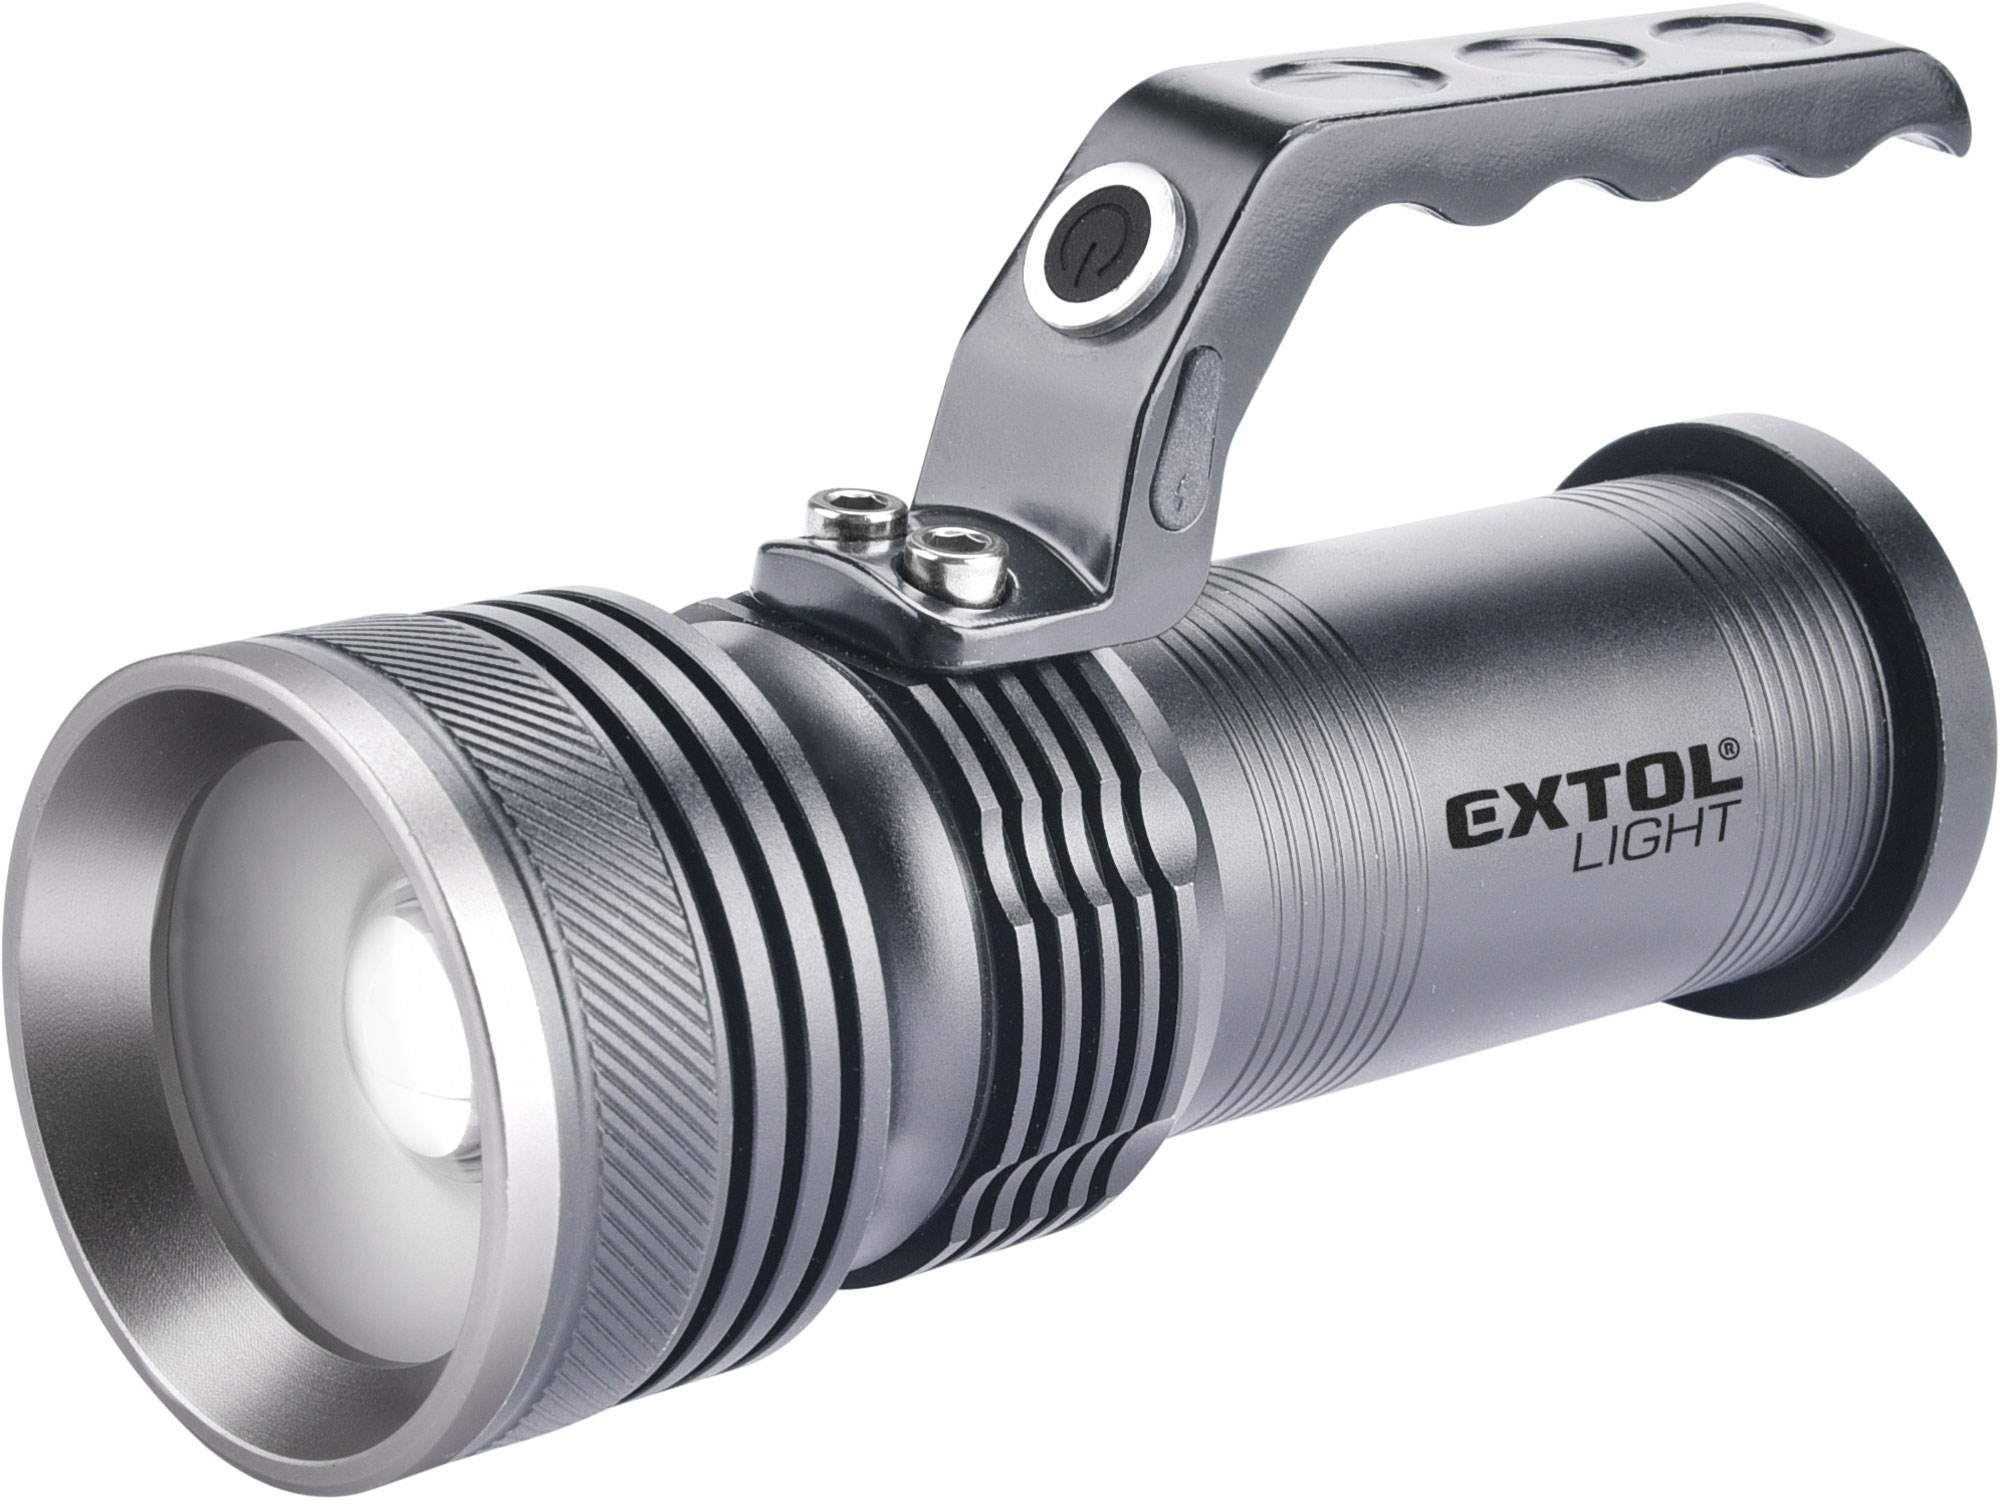 svítilna 300lm, zoom, celokovová, 5W LED, EXTOL LIGHT 43150 